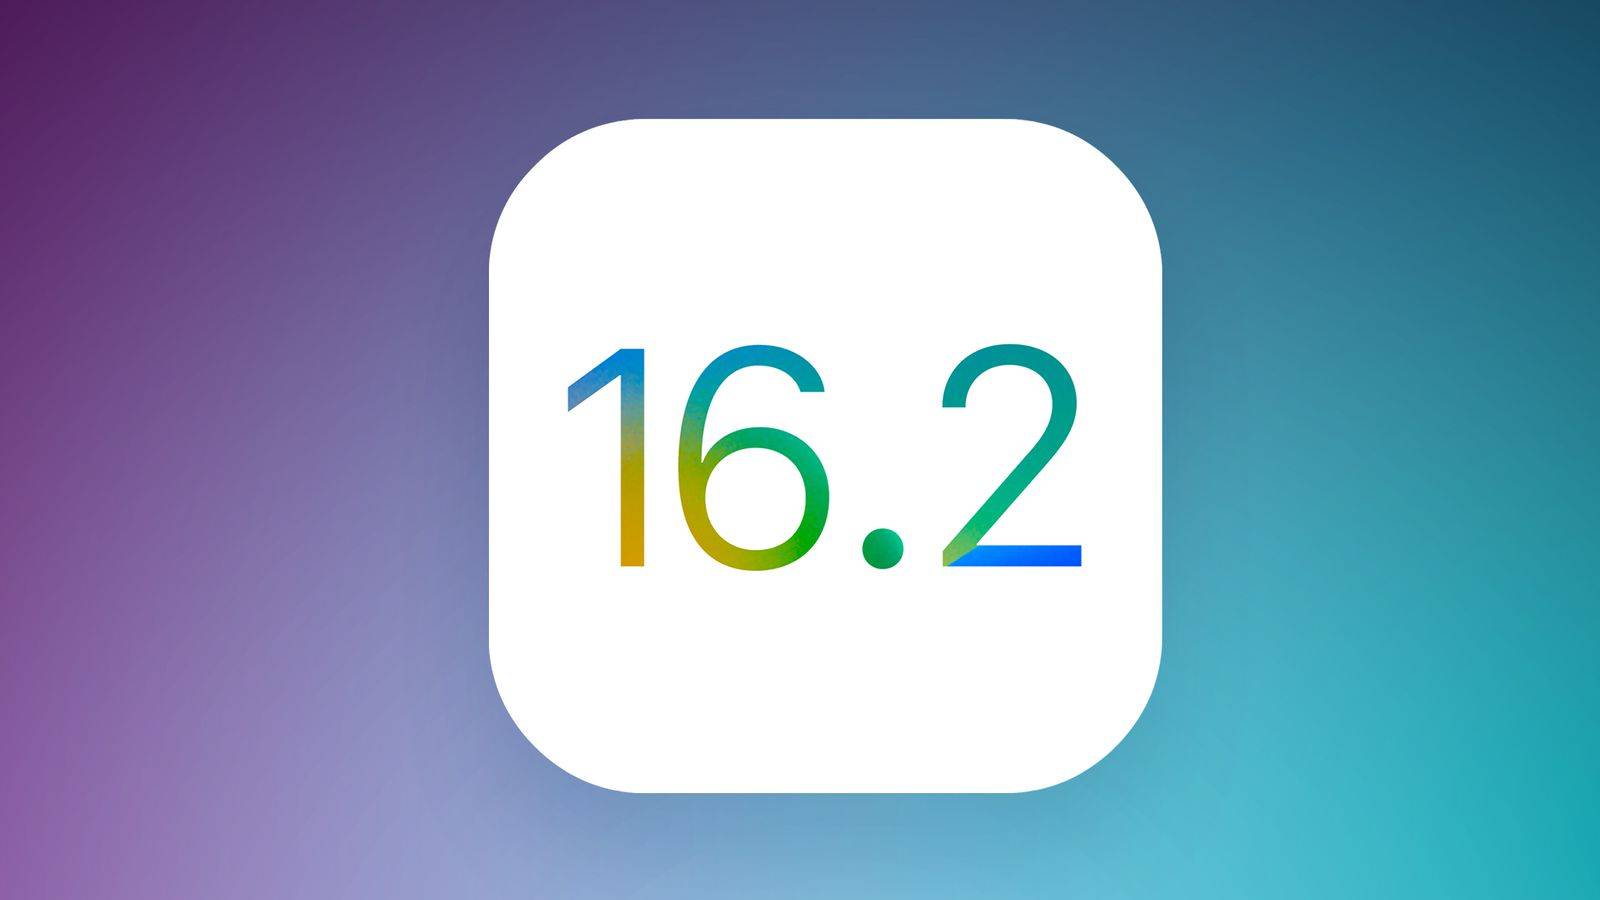 iOS 16.2 vine Schimbare Buna iPhone Decembrie